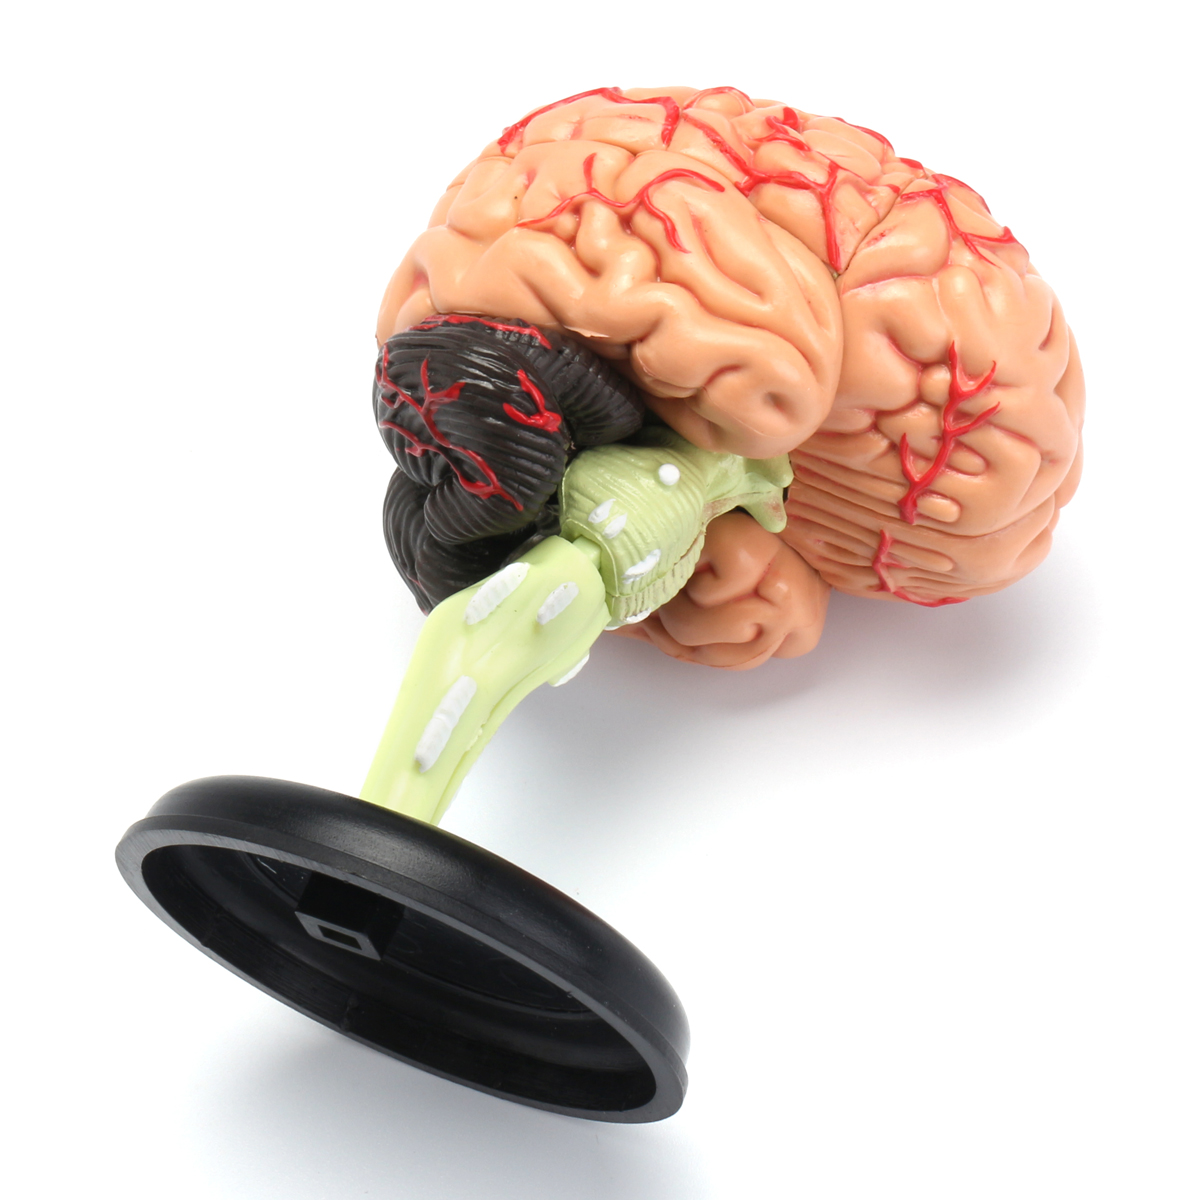 Купить мозги спб. Модель мозга человека. Муляж мозга. Модель мозга человека анатомическая. Макет мозга.